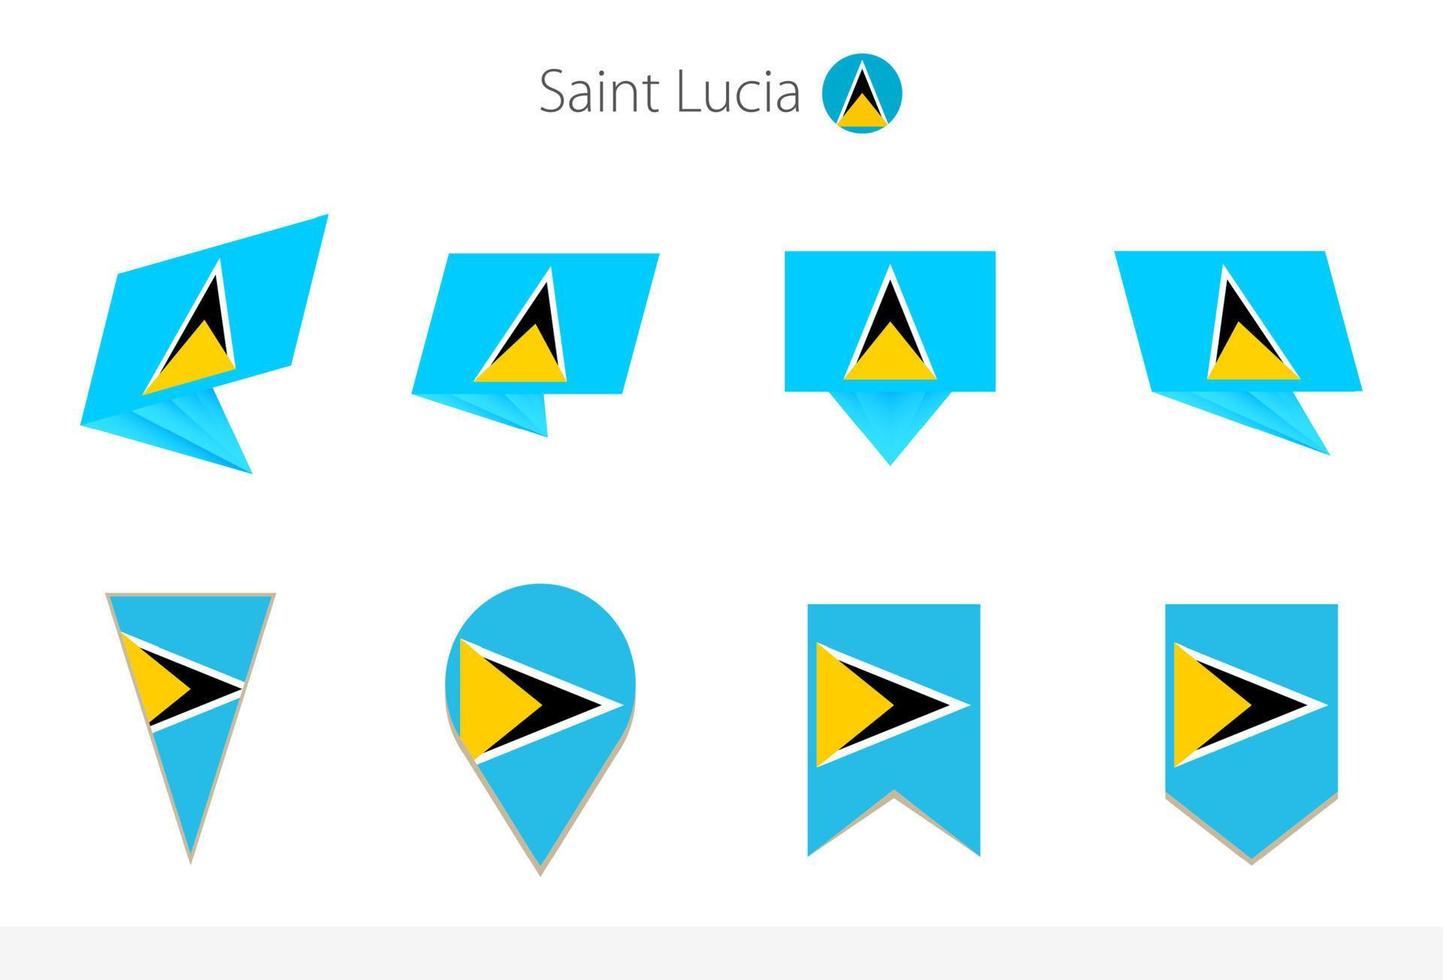 heilige lucia nationaal vlag verzameling, acht versies van heilige lucia vector vlaggen.